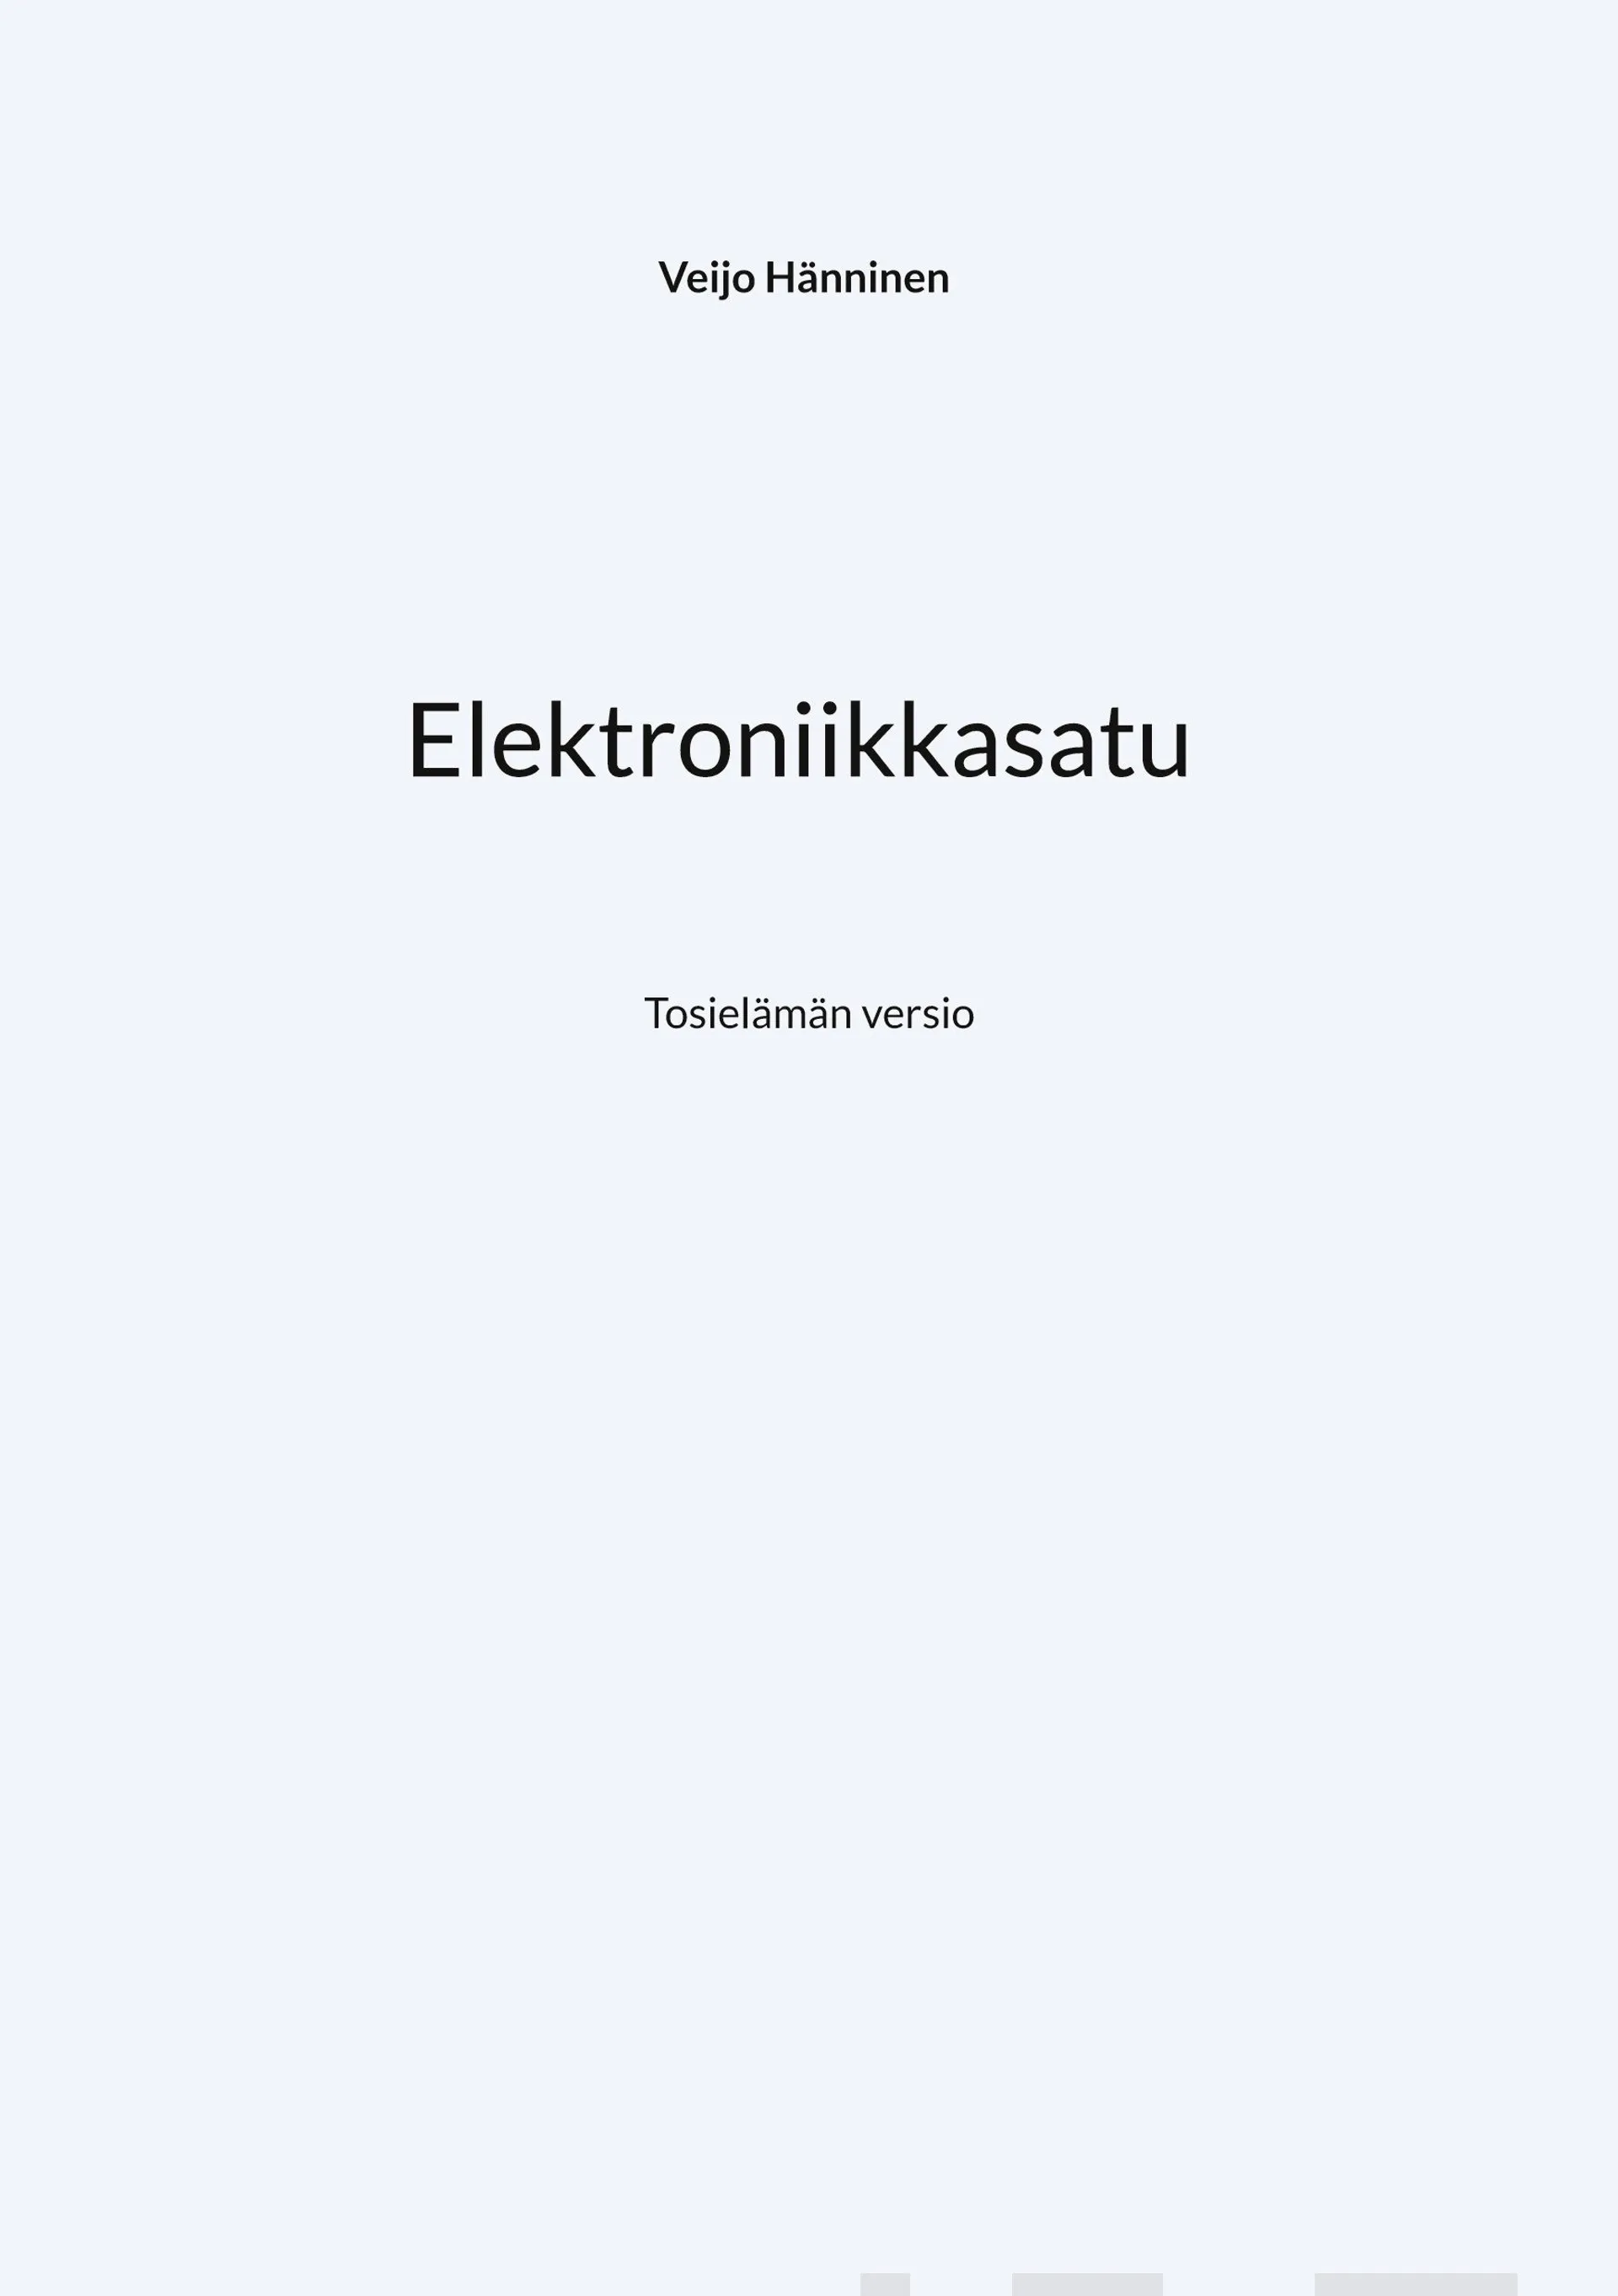 Hänninen, Elektroniikkasatu - Tosielämän versio